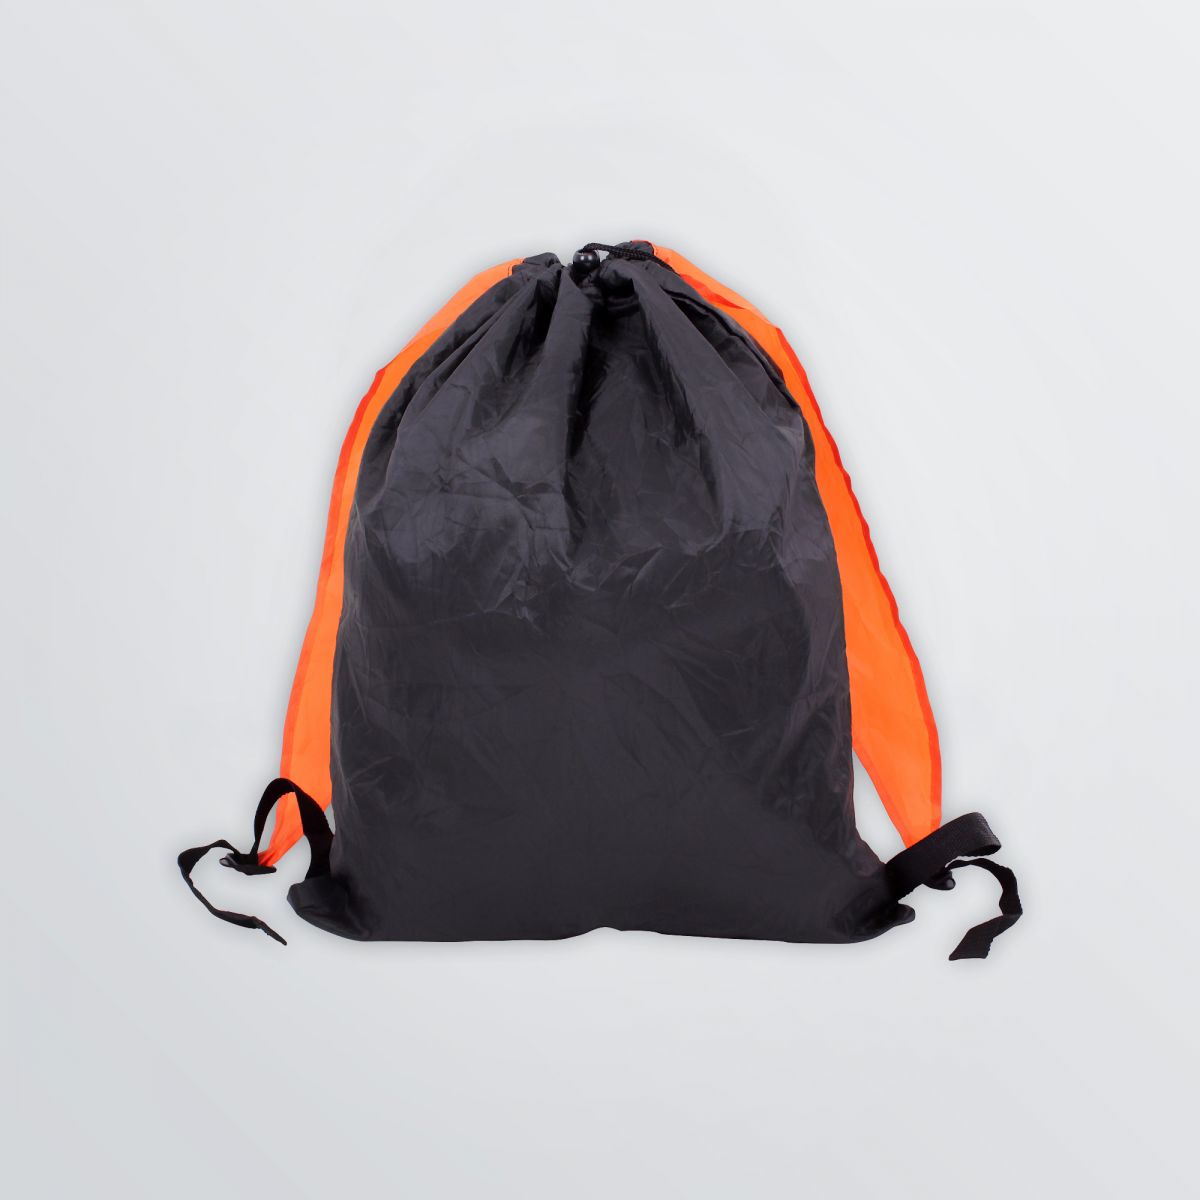 Shoppingbag Compact tragbar als Rucksack - Produktbeispiel schwarz orange